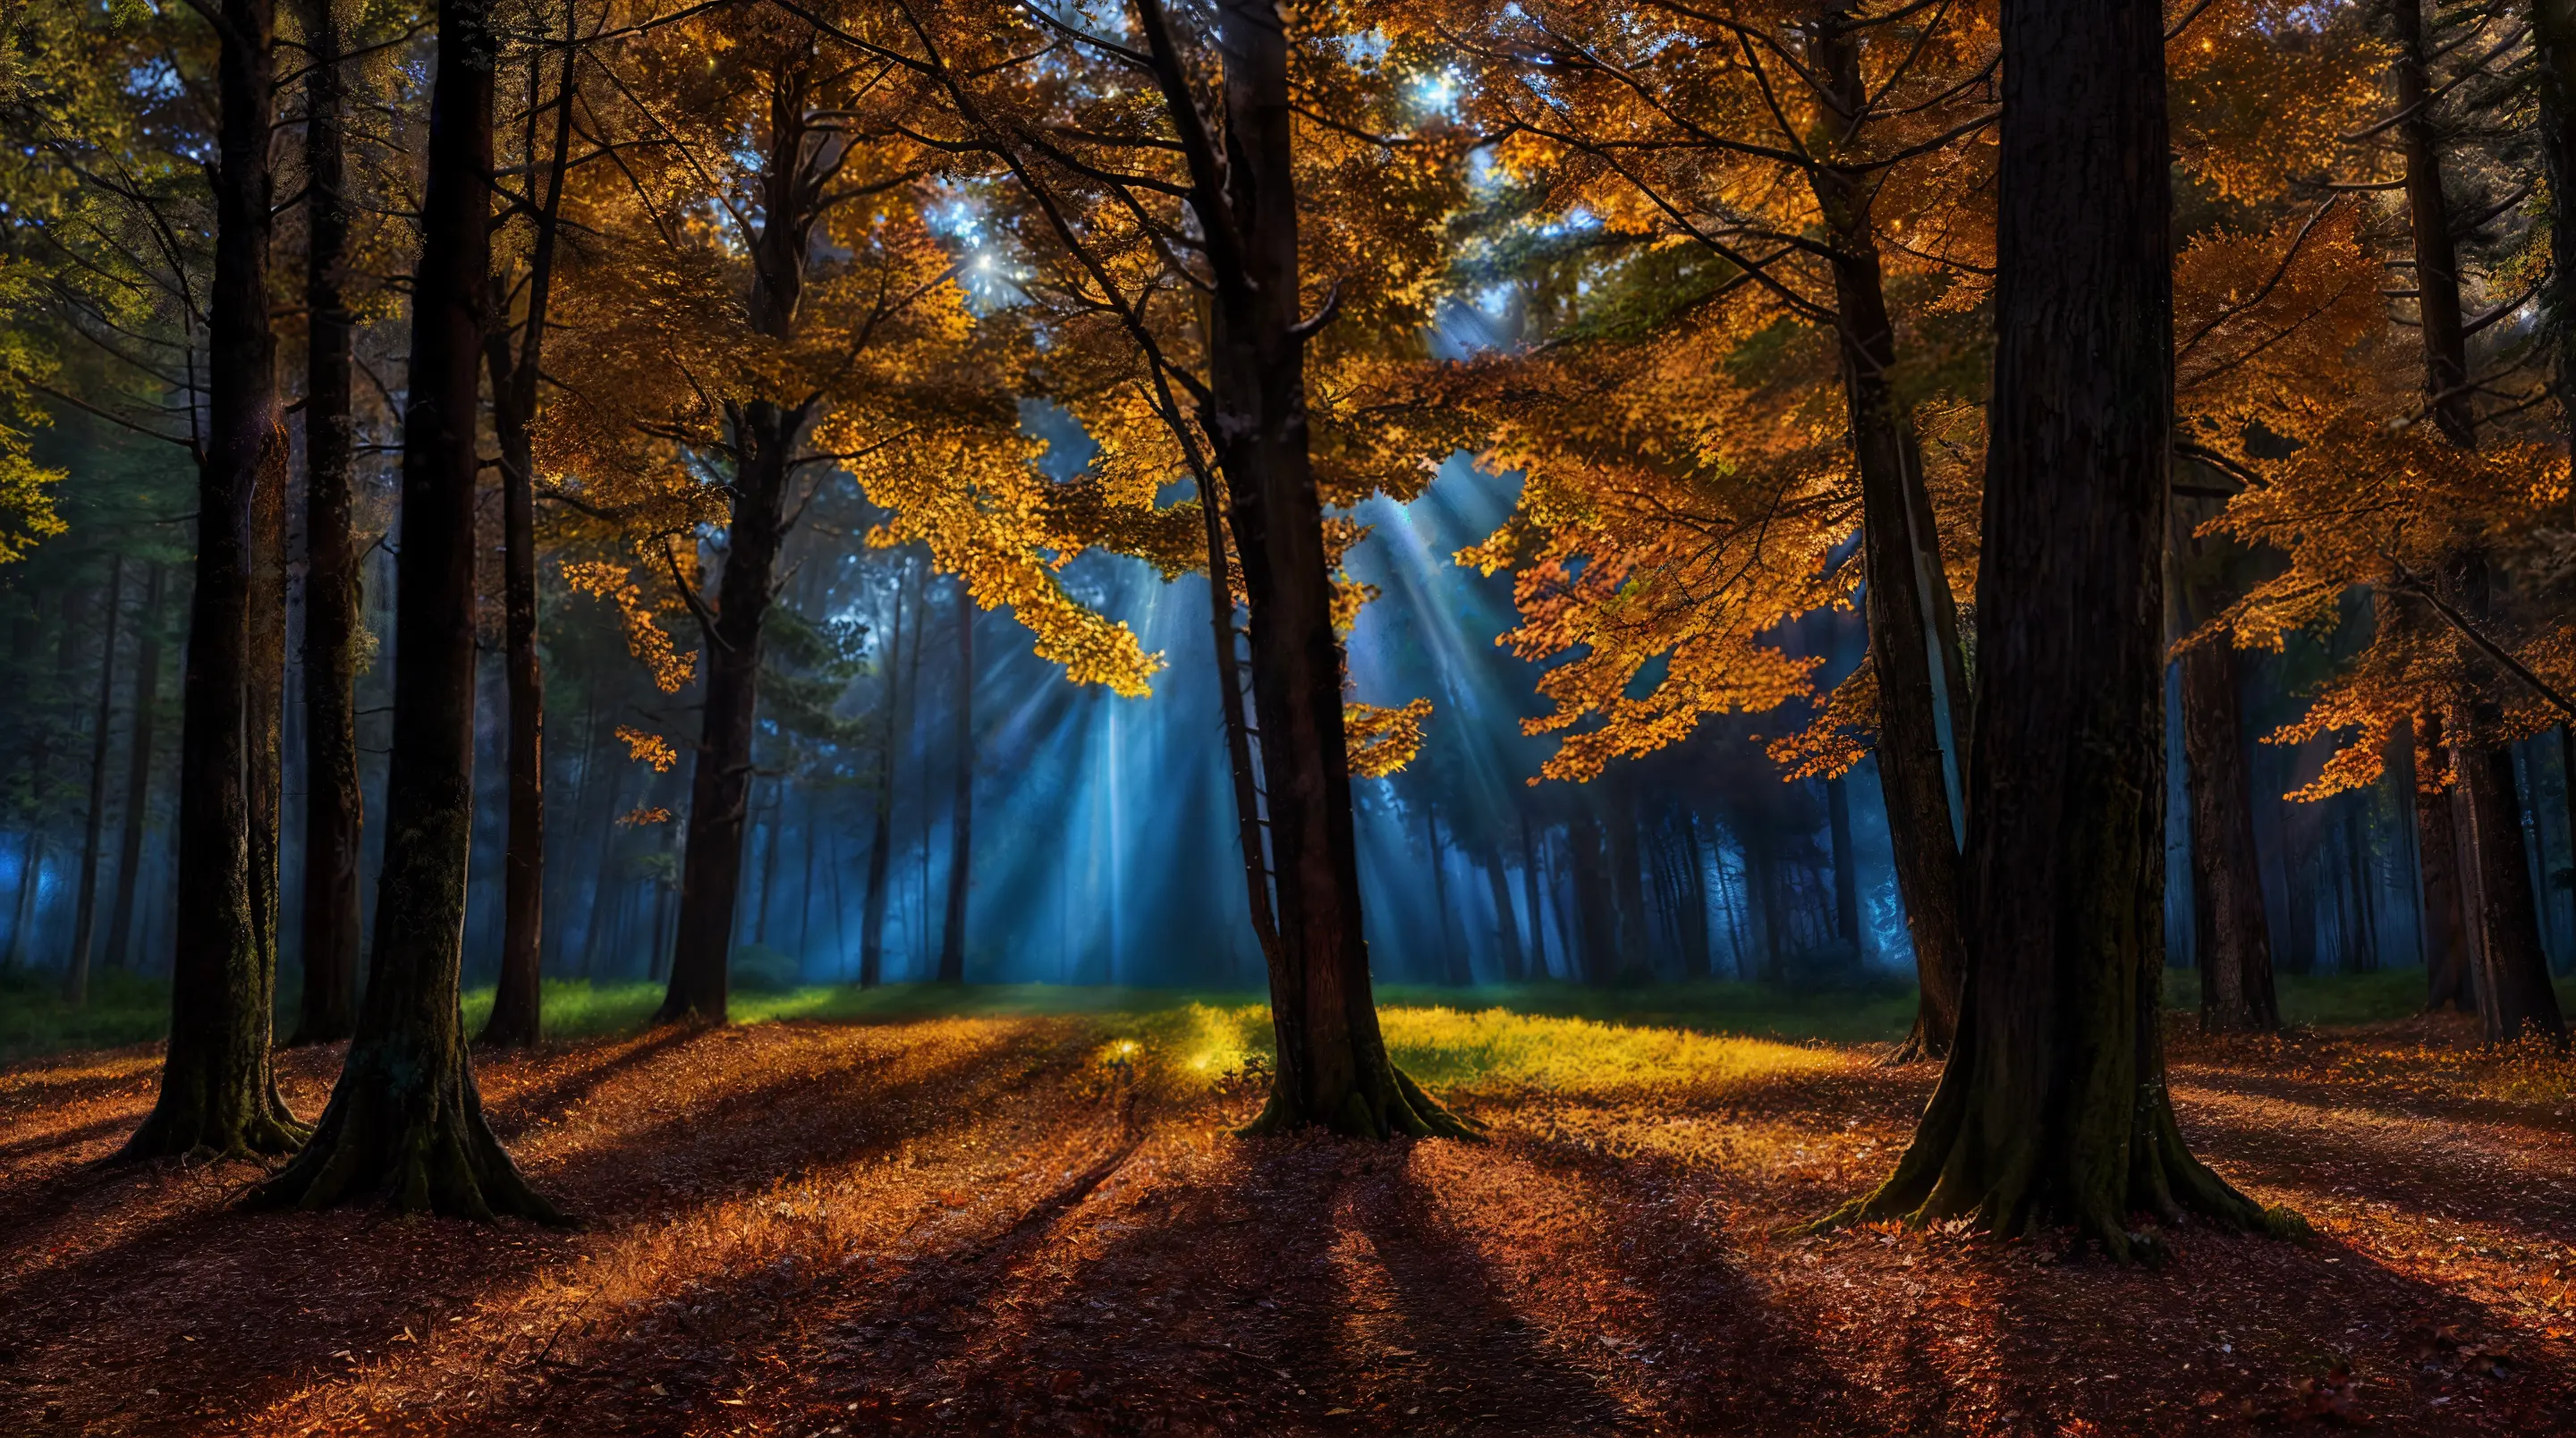 위엄 있는,장관의 (HDR 사진)  가을 밤 달빛 흐린 날씨 어둠 속에서 나무 사이로 태양 광선이 비치는 그림 같은 자연의 모습,
전역 조명, 8K 해상도, 상세한, 집중하다, Mark Keathley가 Flickr에 소개한 클로즈업 샷,제이크 구즈먼